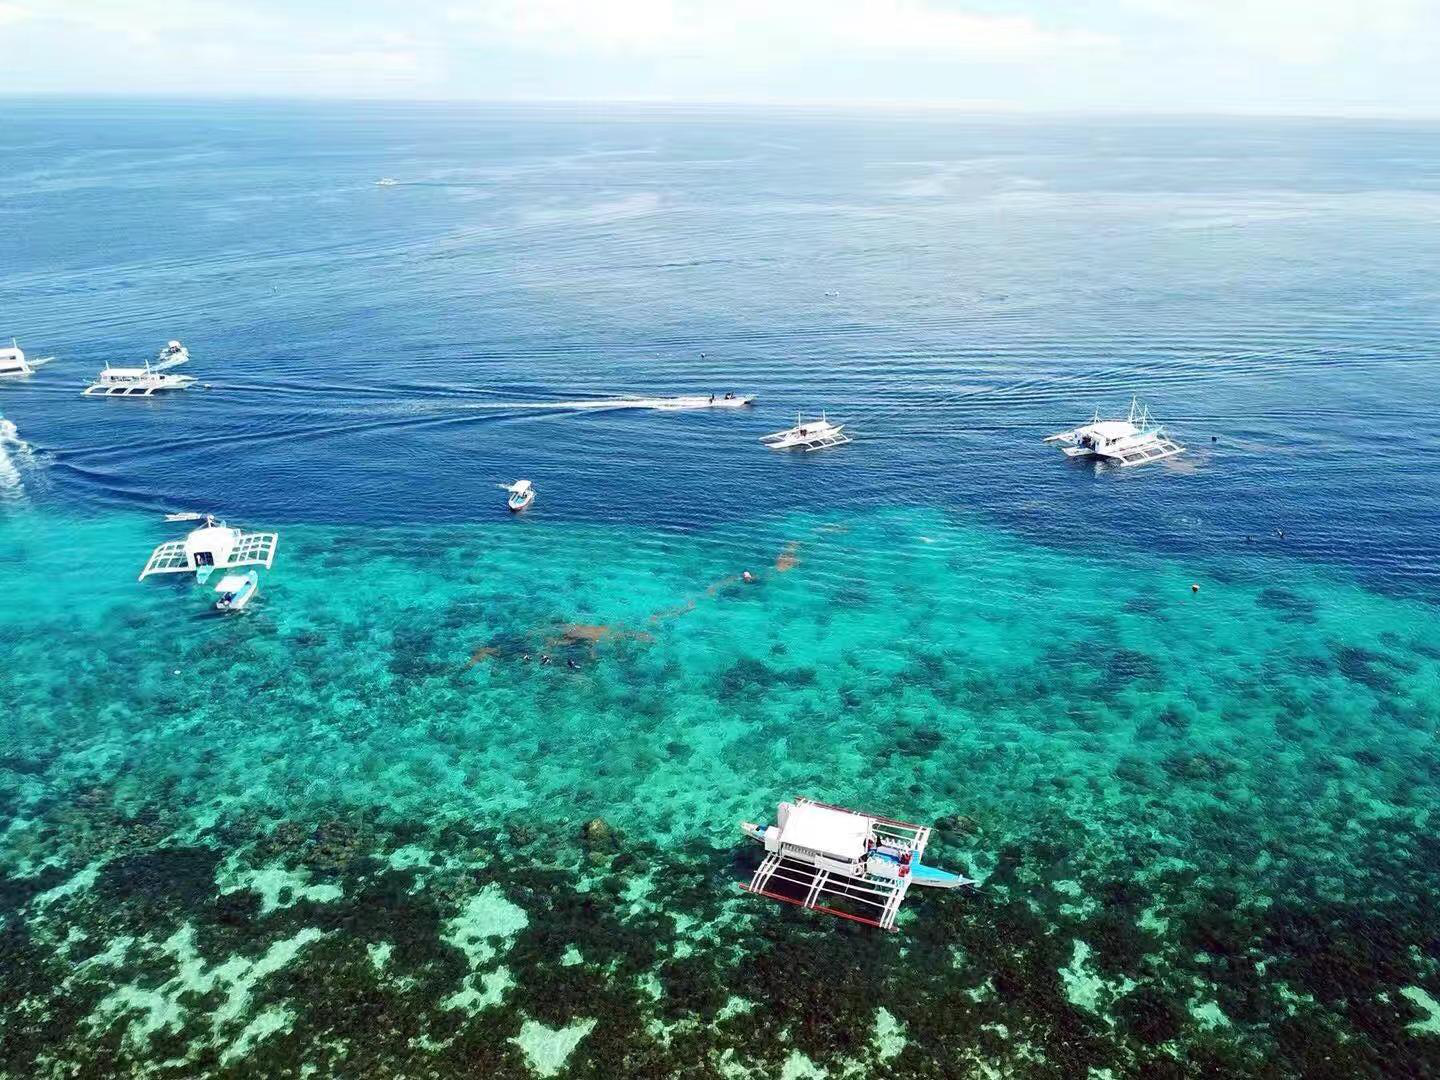 菲律宾最美的岛屿，薄荷岛游玩攻略大全-第六感度假